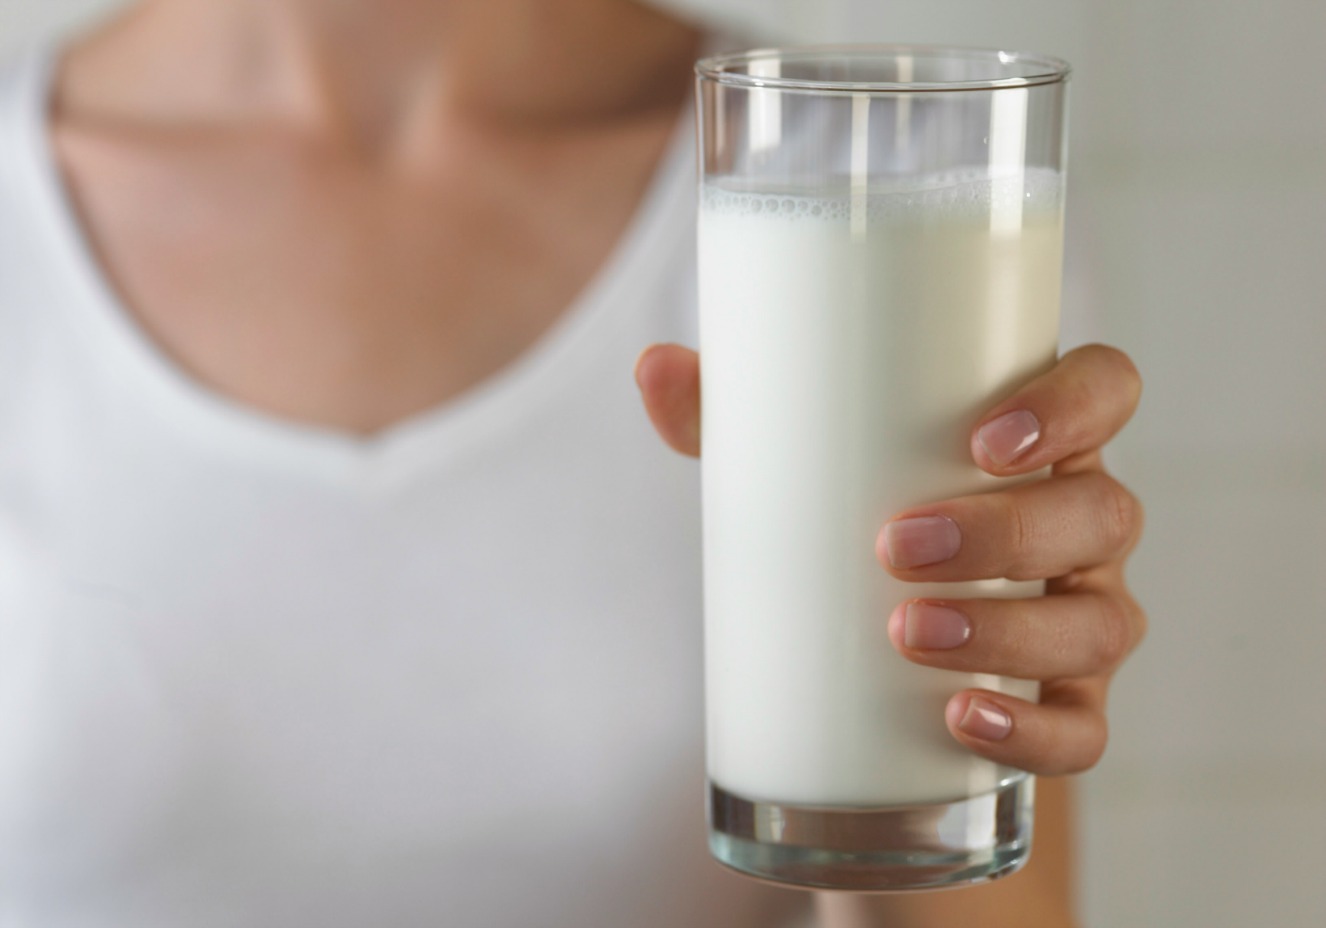         Không Uống Sữa, Ăn Các Sản Phẩm Từ Sữa Nếu Bị Rối Loạn Tiêu Hóa (Ảnh minh họa)  